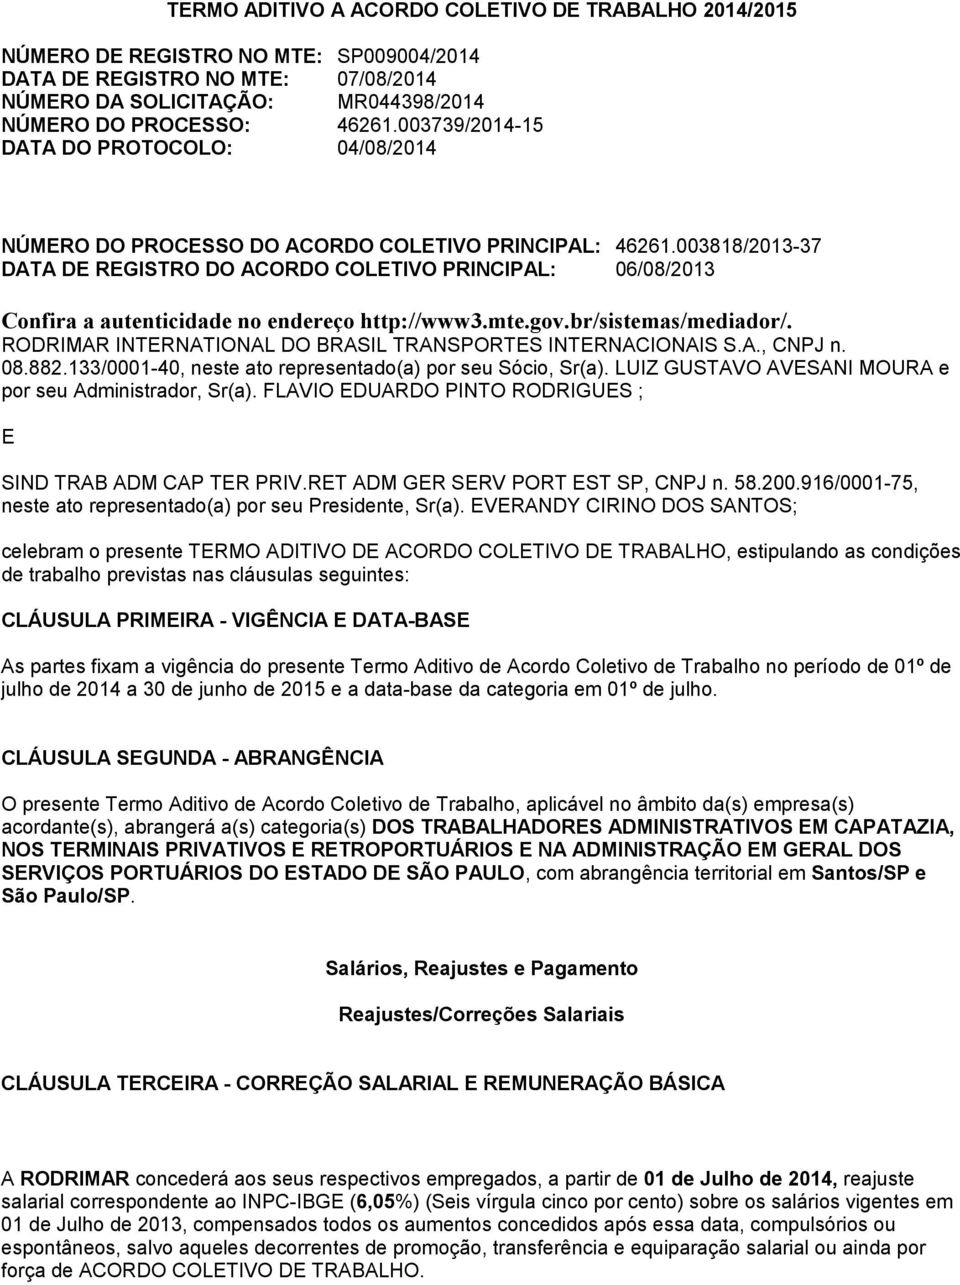 003818/2013-37 DATA DE REGISTRO DO ACORDO COLETIVO PRINCIPAL: 06/08/2013 Confira a autenticidade no endereço http://www3.mte.gov.br/sistemas/mediador/.